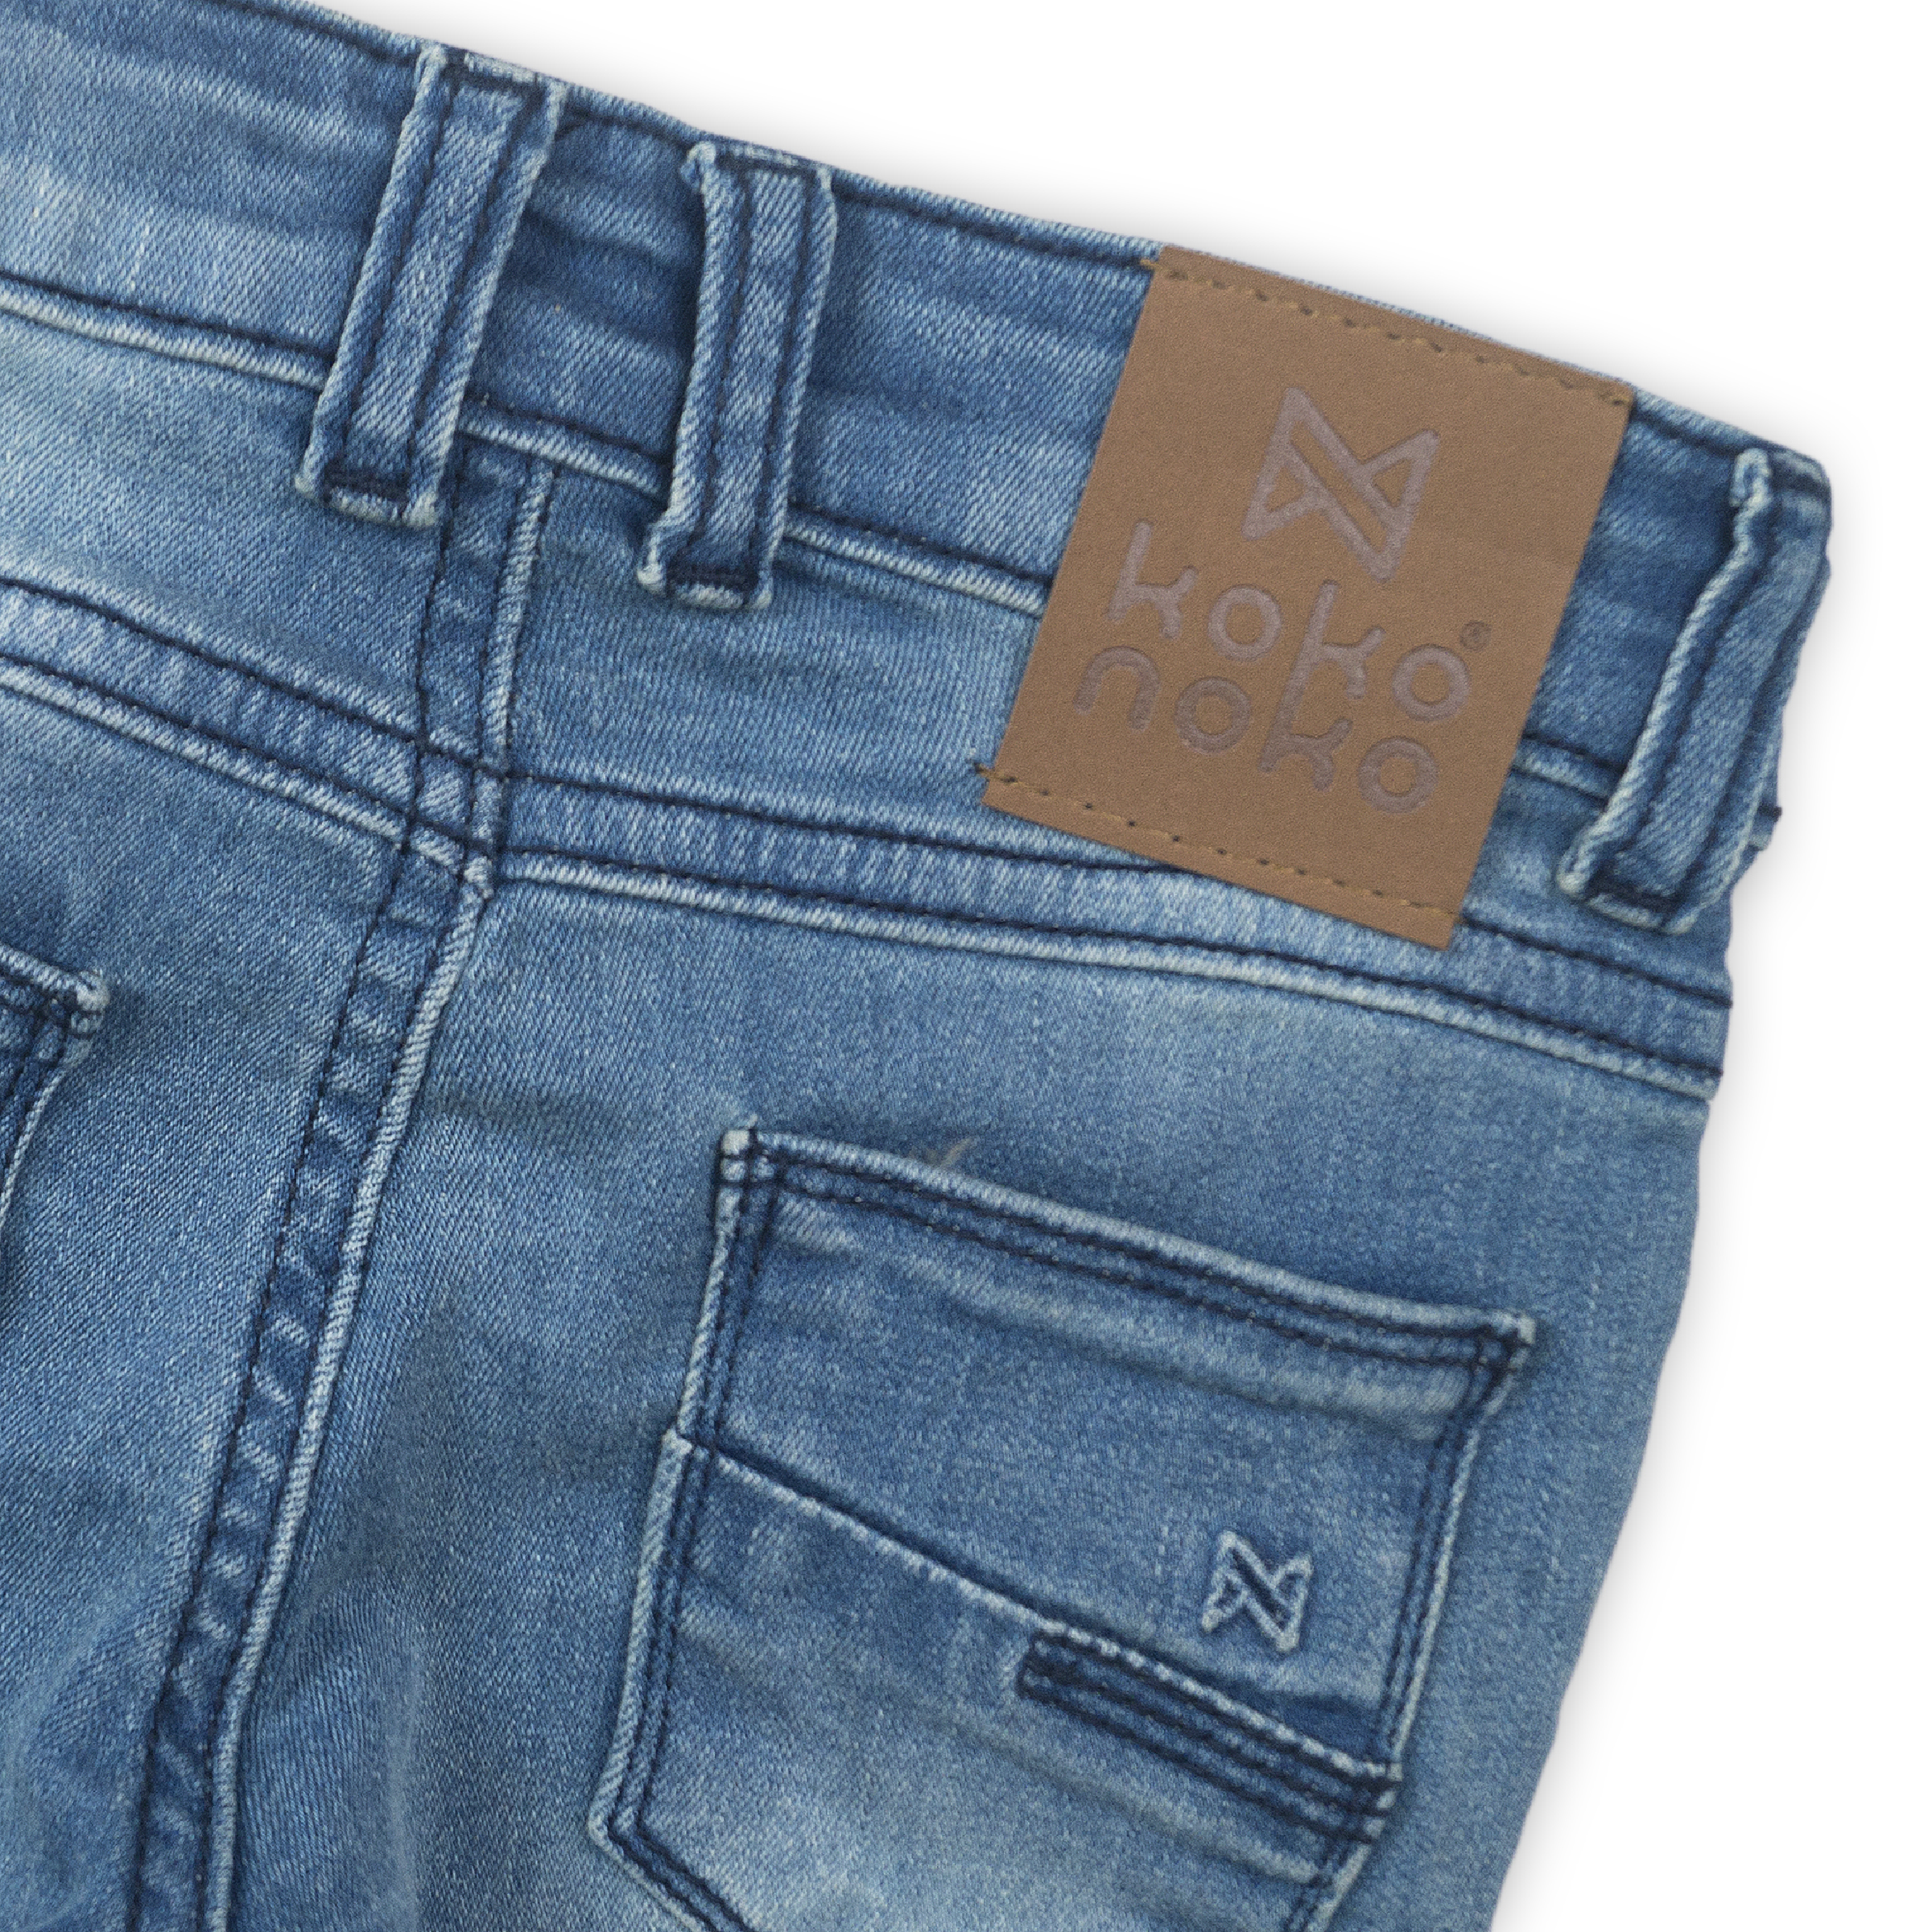 Jongens Jeans van Koko Noko in de kleur Blue jeans in maat 86.